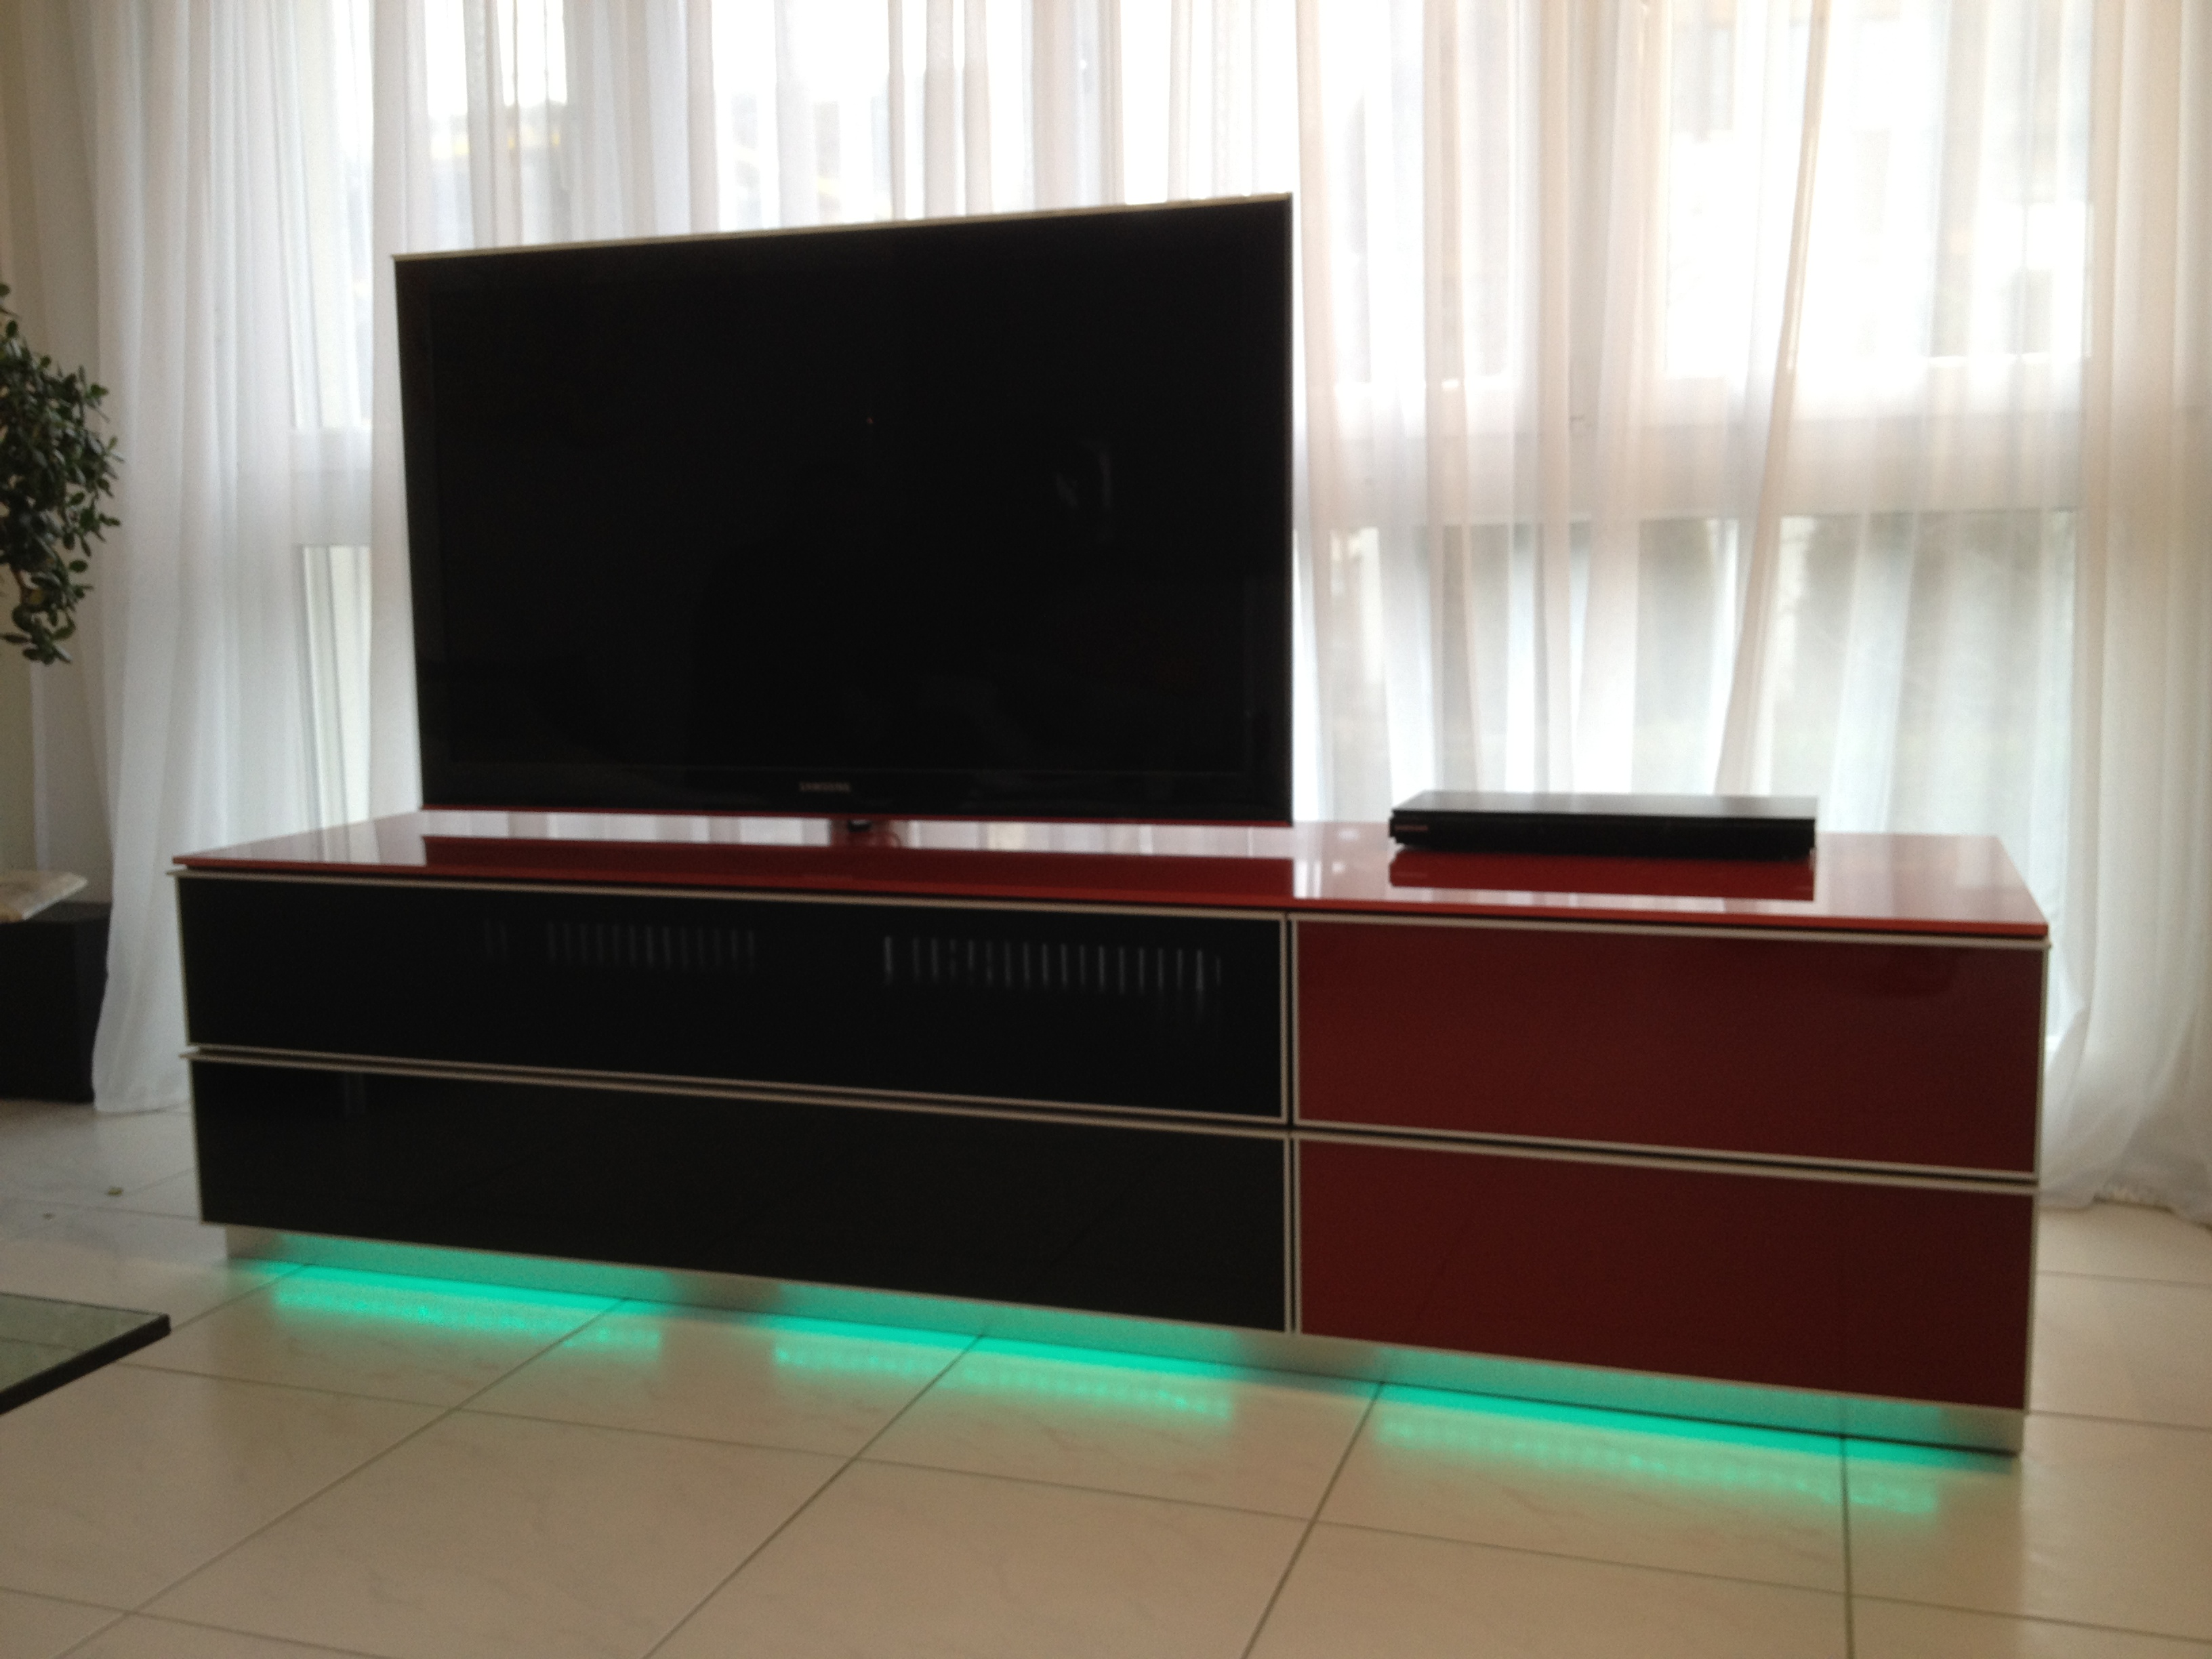 Ausgeschalteter  TV im Wohnzimmer mit grünem Licht am TV-Möbel